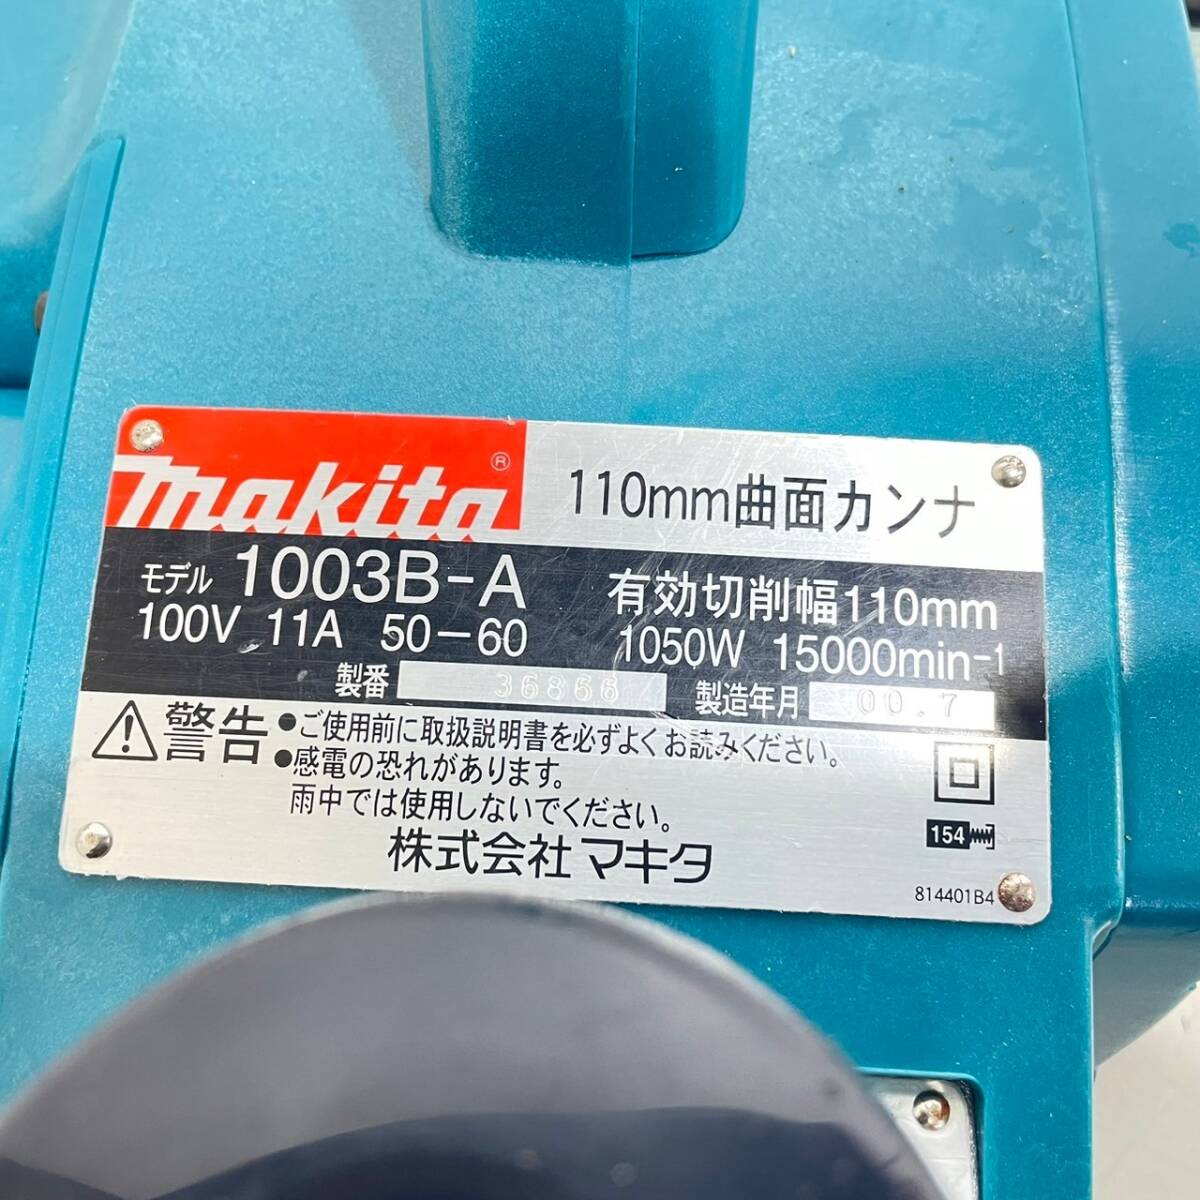 【動画有り】makita マキタ 1003B-A 曲面カンナ 電動かんな AC100V 有効切削幅110mm 領収OK/直引 h0415-6の画像8